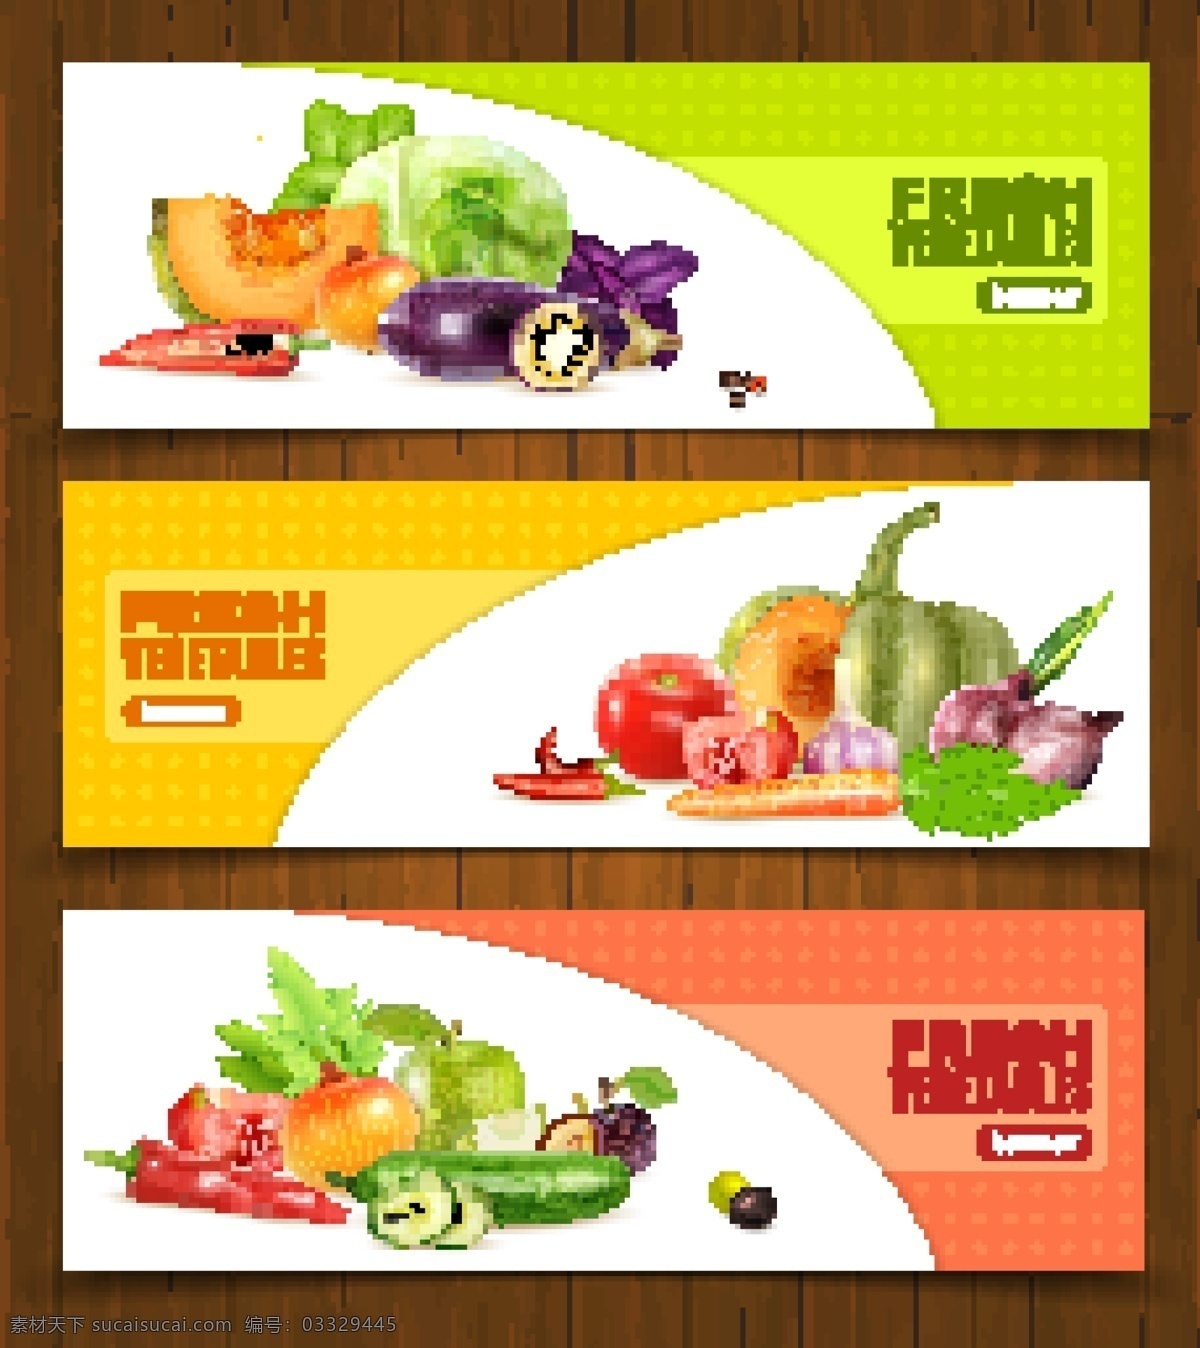 南瓜 包菜 香菇 草莓 水果 新鲜柠檬 苹果 香蕉 茄子 红萝卜 洋葱 水蜜桃 哈密瓜 柠檬 卡通漫画 卡通食物 蔬菜水果海报 白色